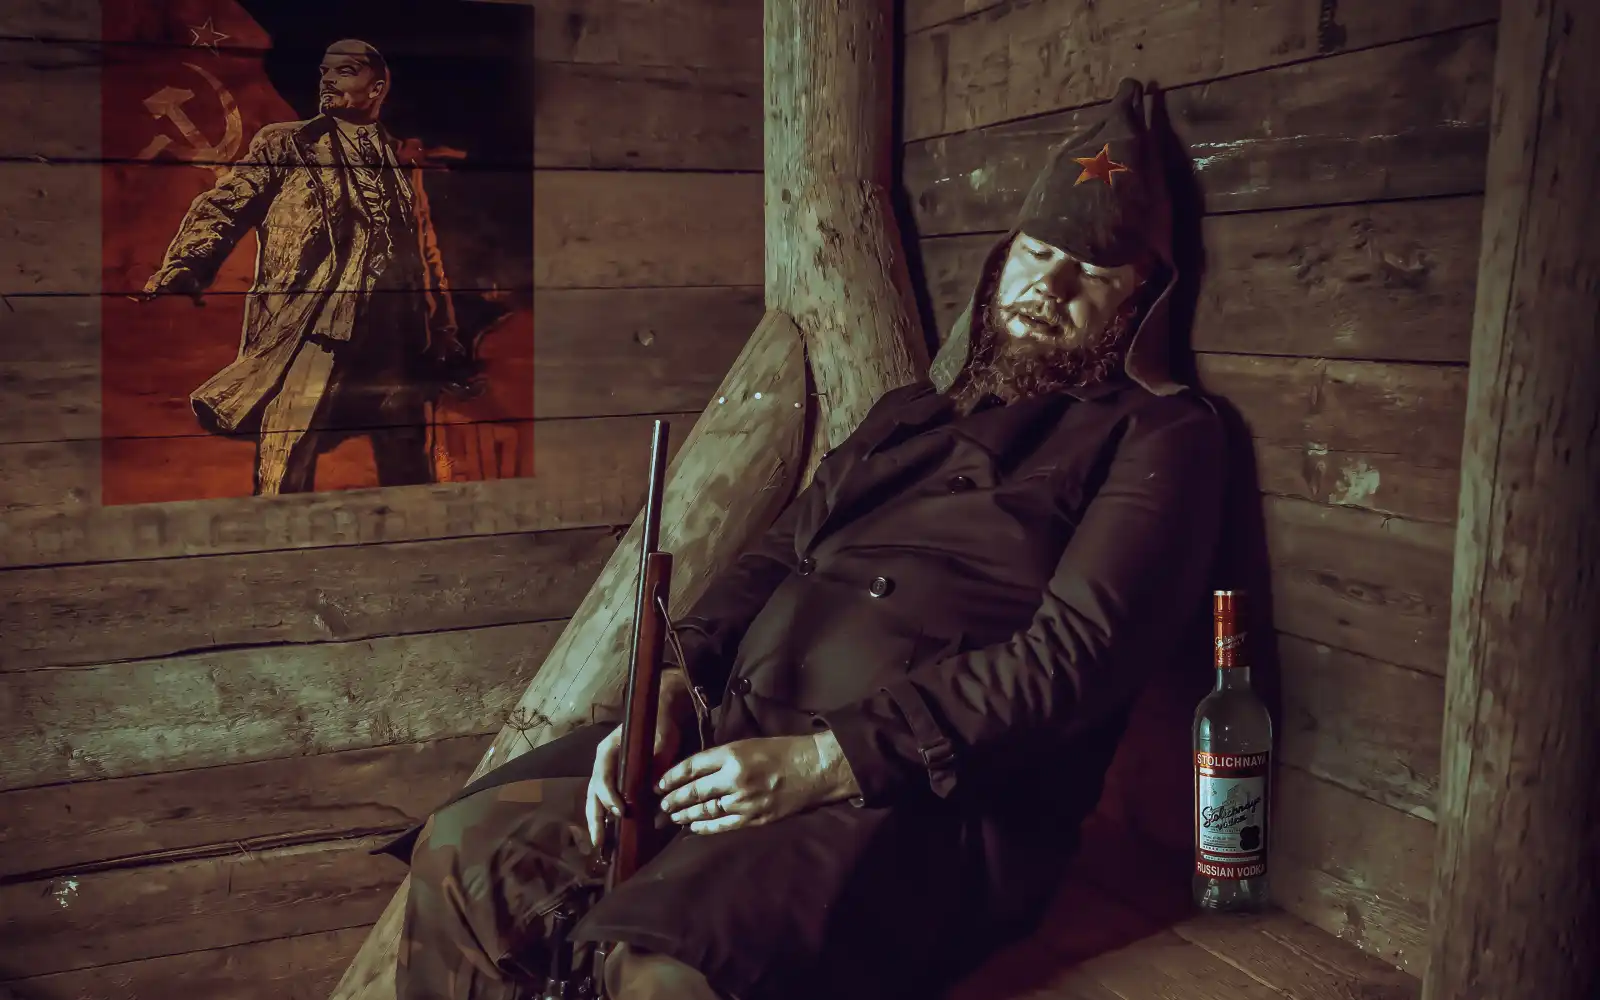 급성 알콜중독, 남성이 나무로된 집에서 총을 들고 의자에 앉아 있으며 눈을 감고 있다. 옆에는 술 병이 보이는 사진